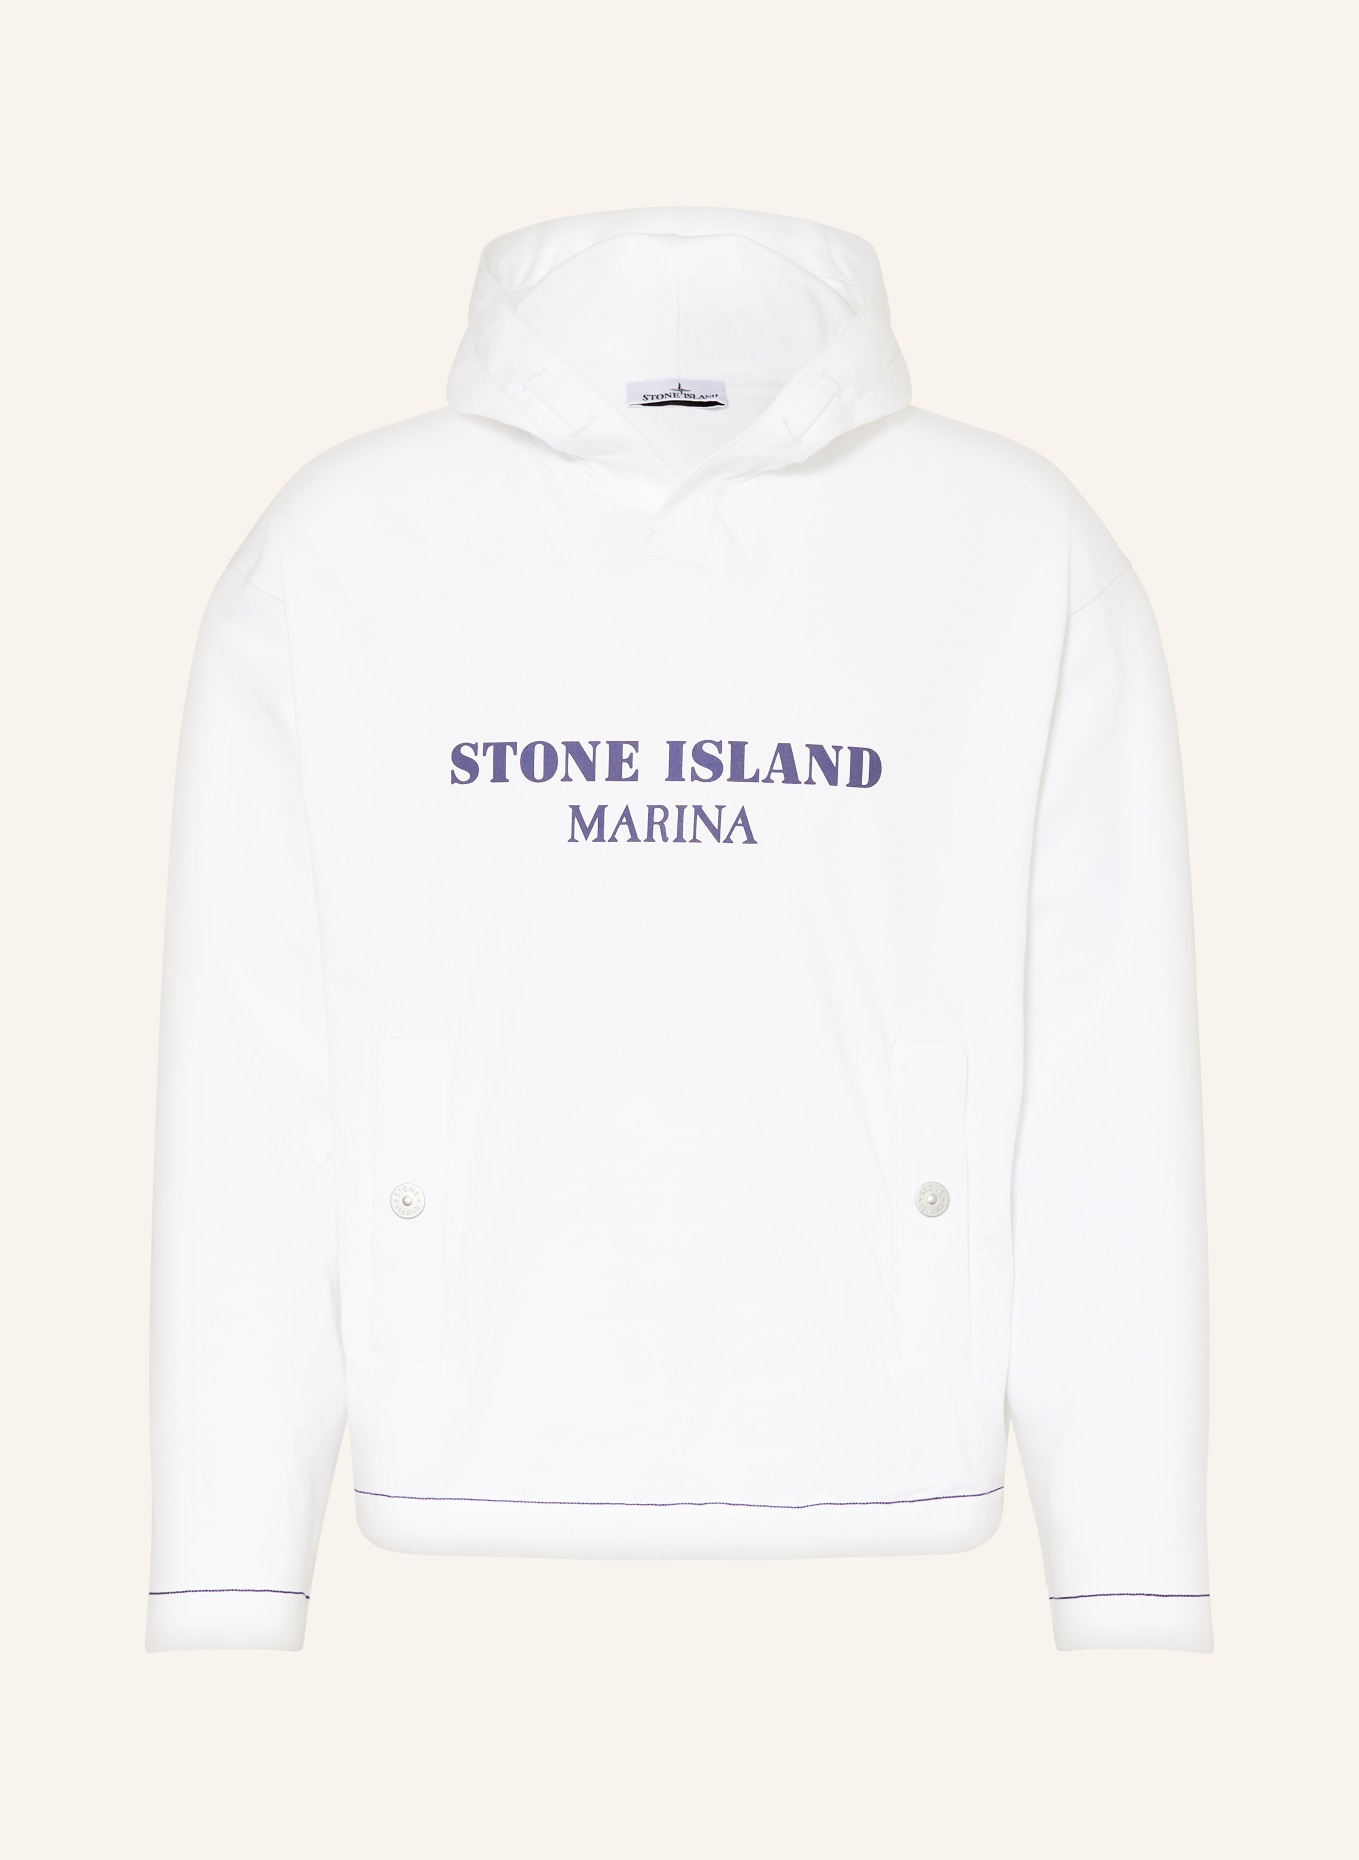 STONE ISLAND Oversized hoodie MARINA, Color: WHITE (Image 1)